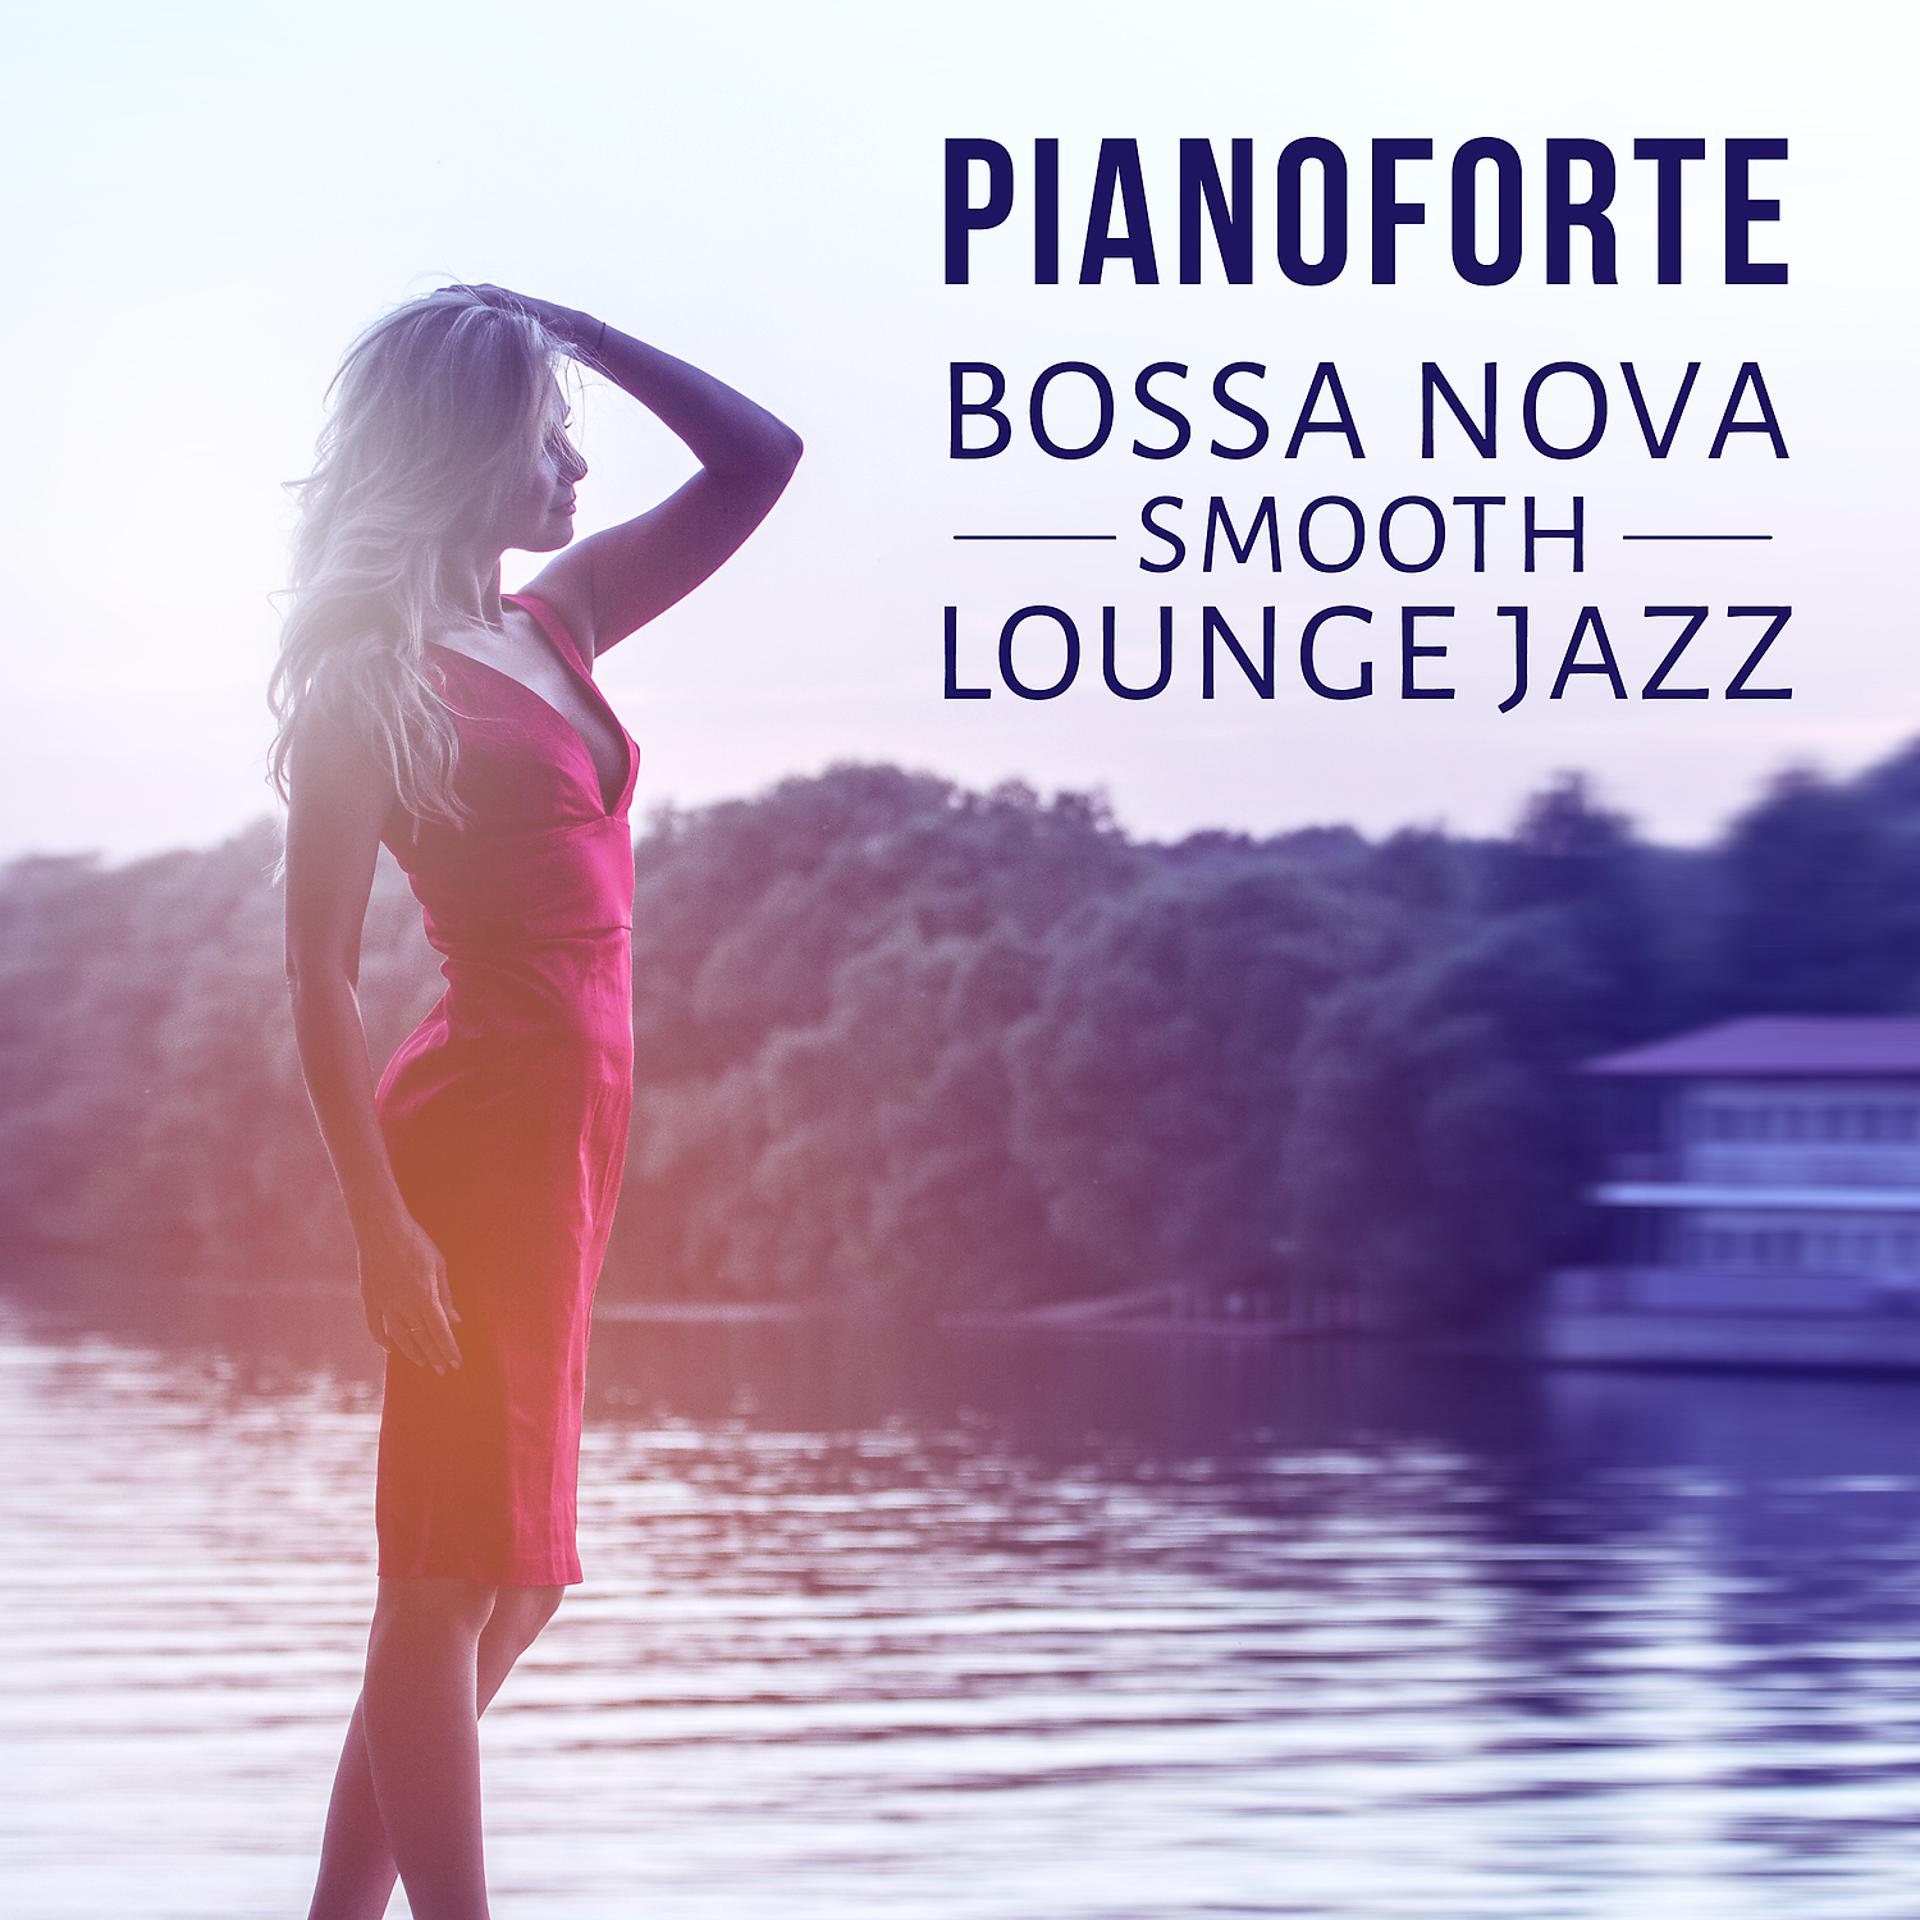 Постер альбома Pianoforte: Bossa Nova Smooth Lounge Jazz – Musica rilassante e triste, Piano bar del mar, Buddha Cafe, Musica strumentale per riposo, Distensione, Relax e si calmi